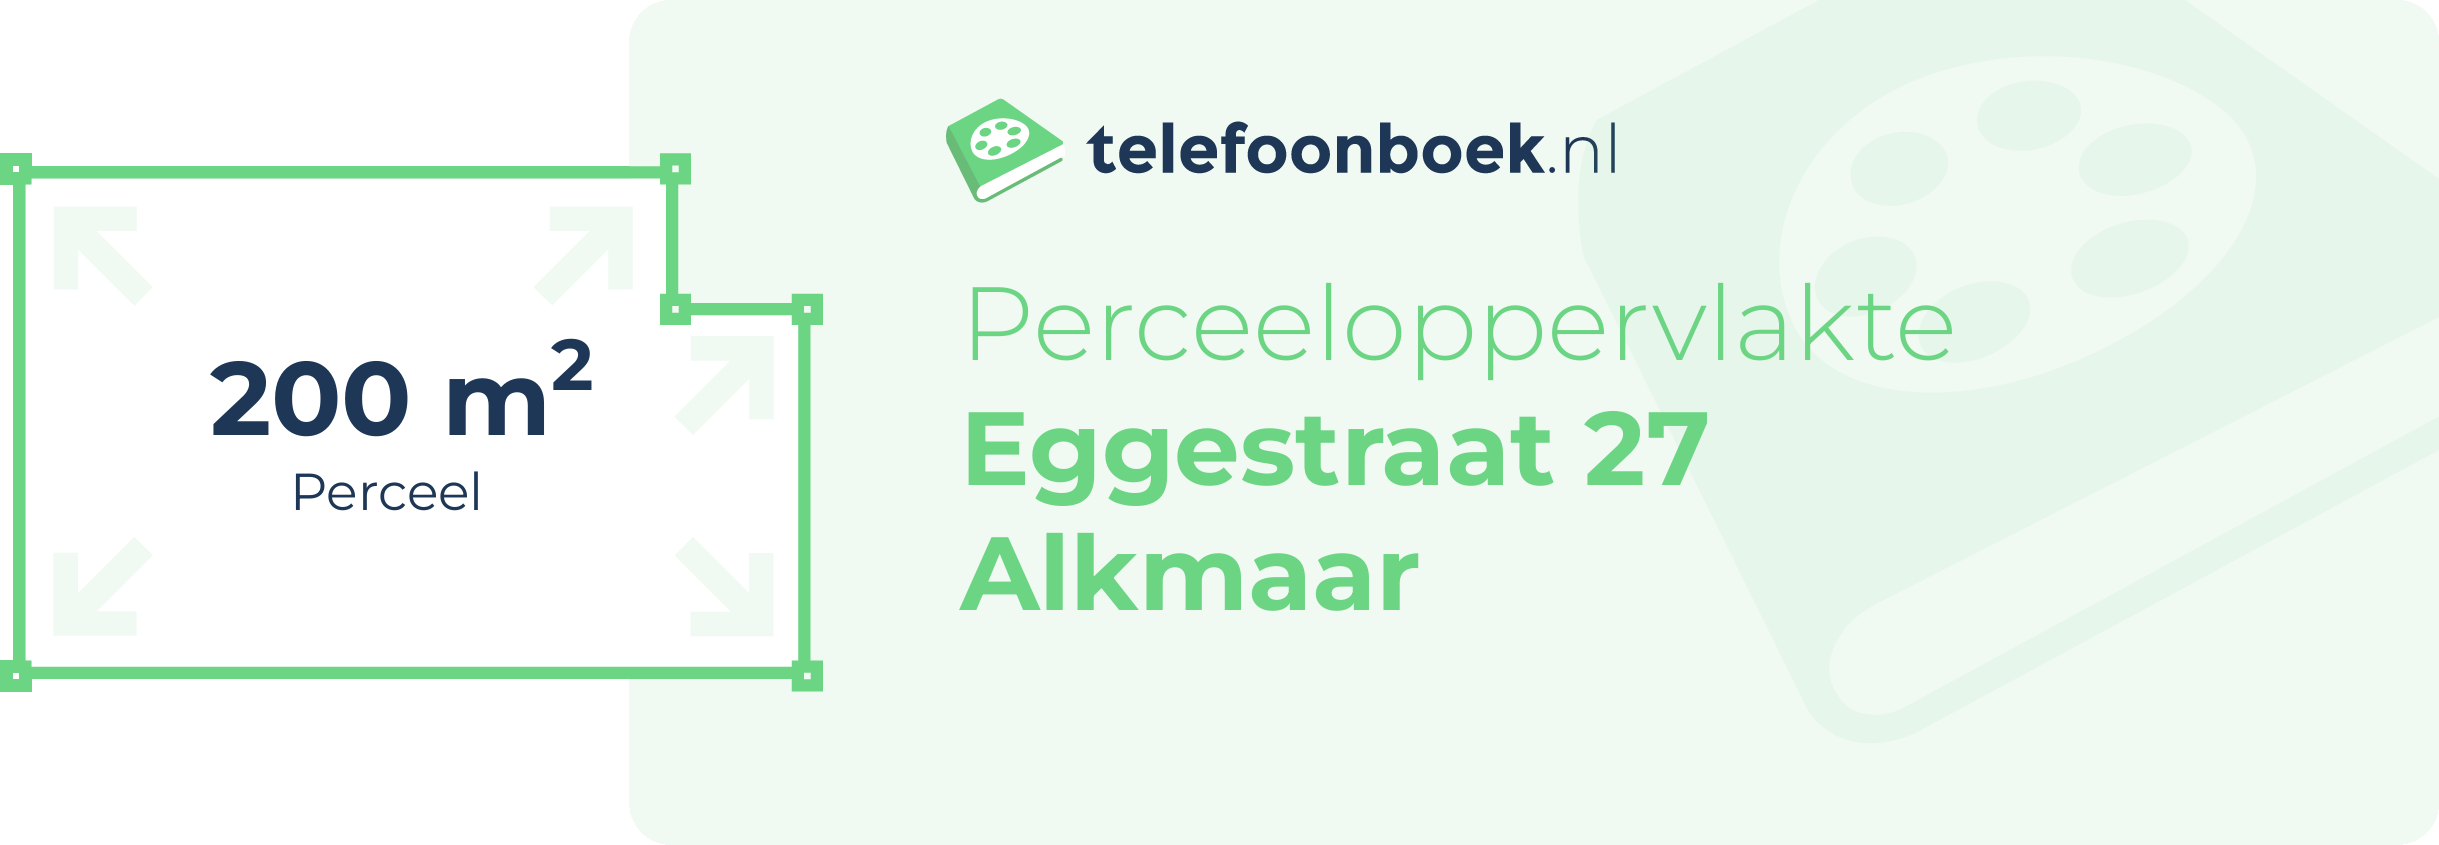 Perceeloppervlakte Eggestraat 27 Alkmaar